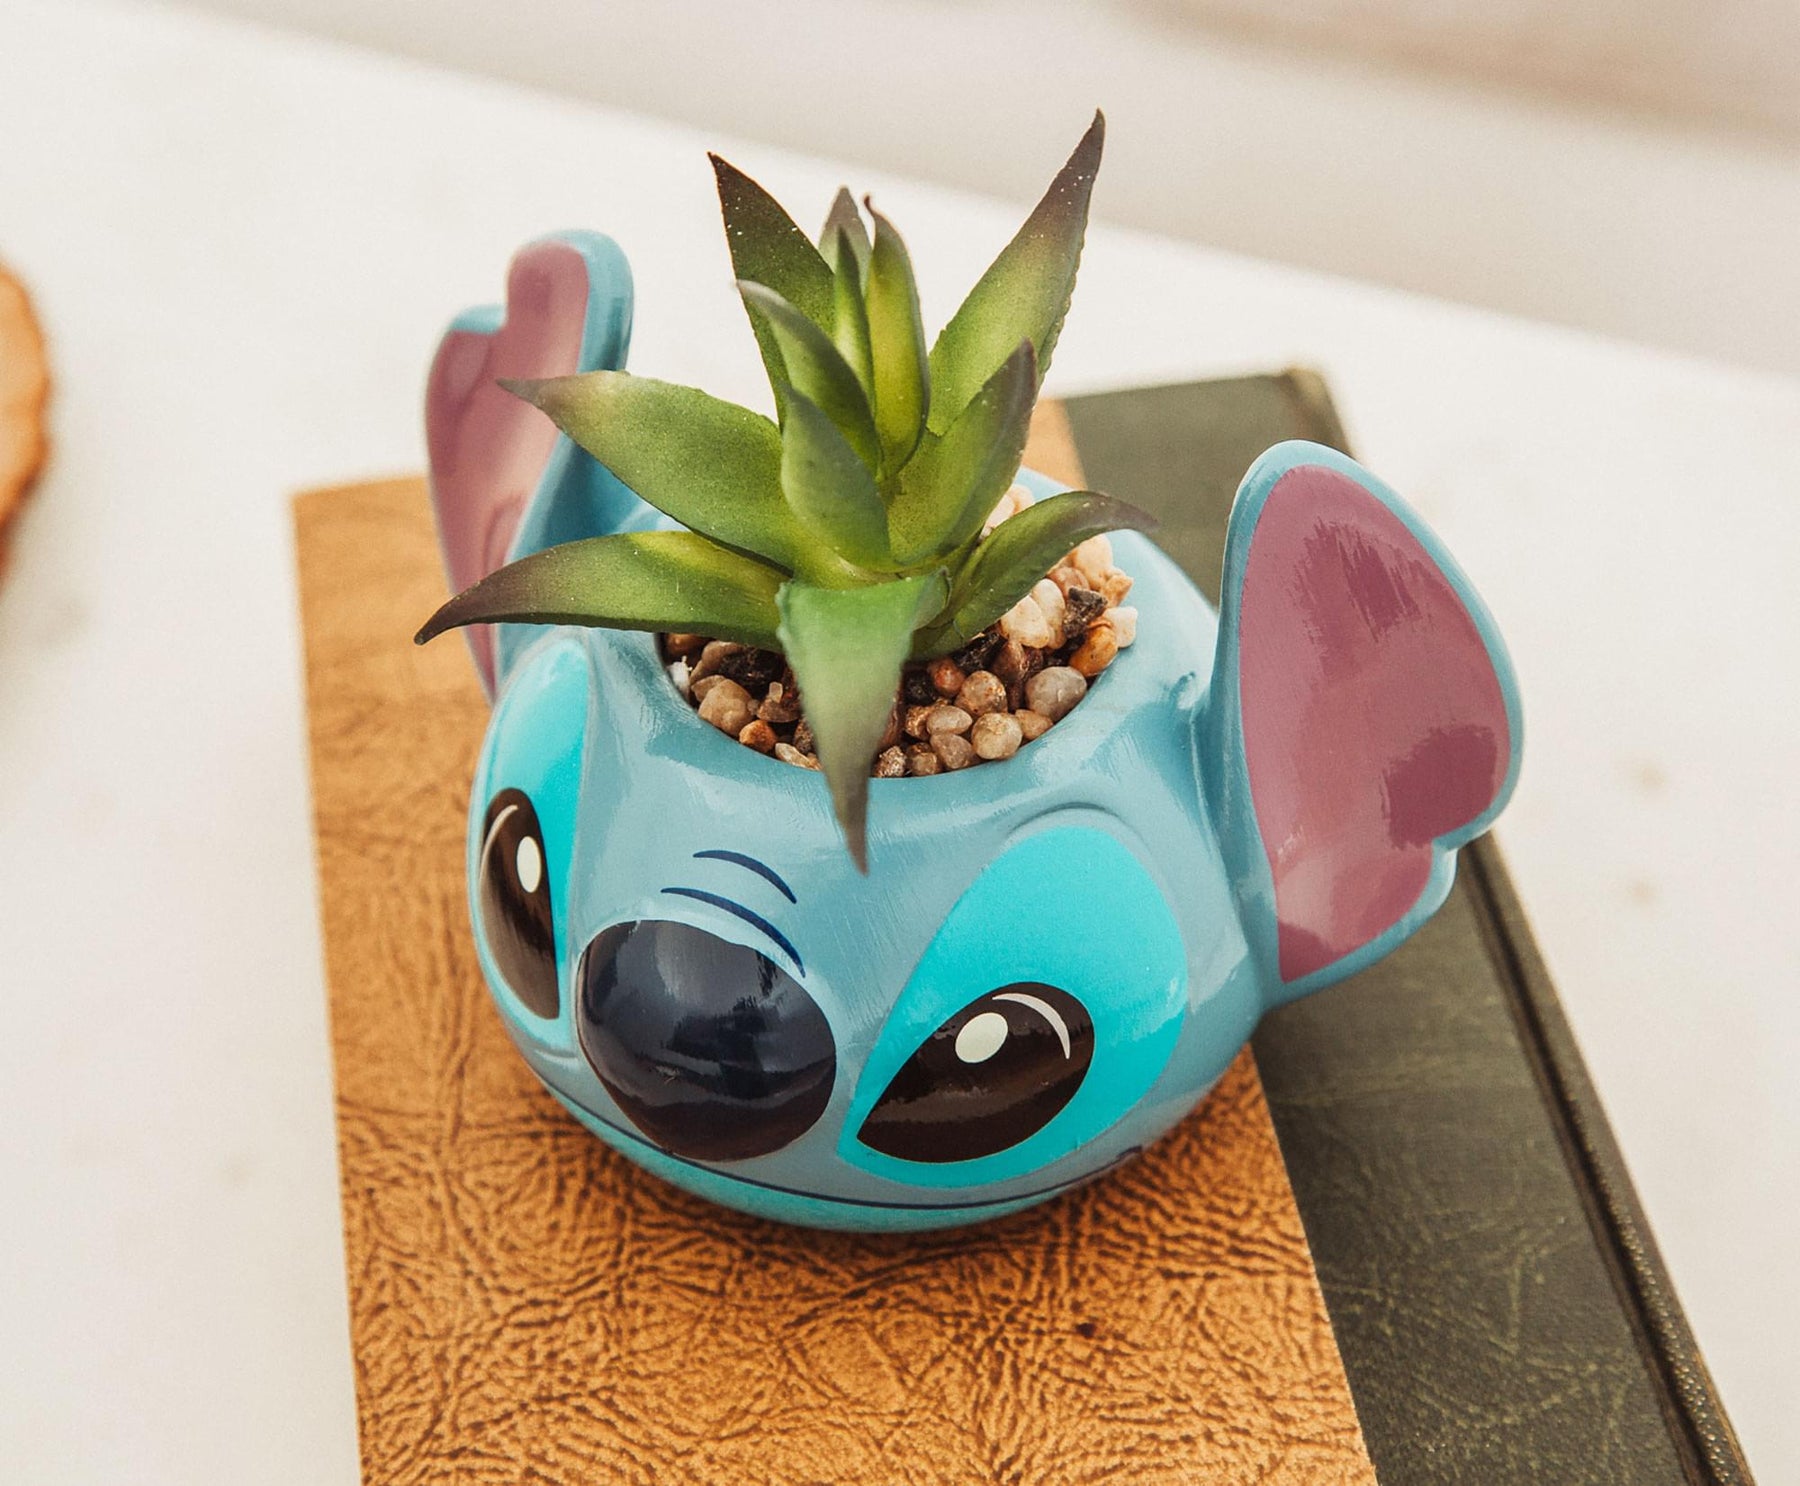 Disney Lilo & Stitch 3-Inch Ceramic Mini Planter with Artificial Succulent